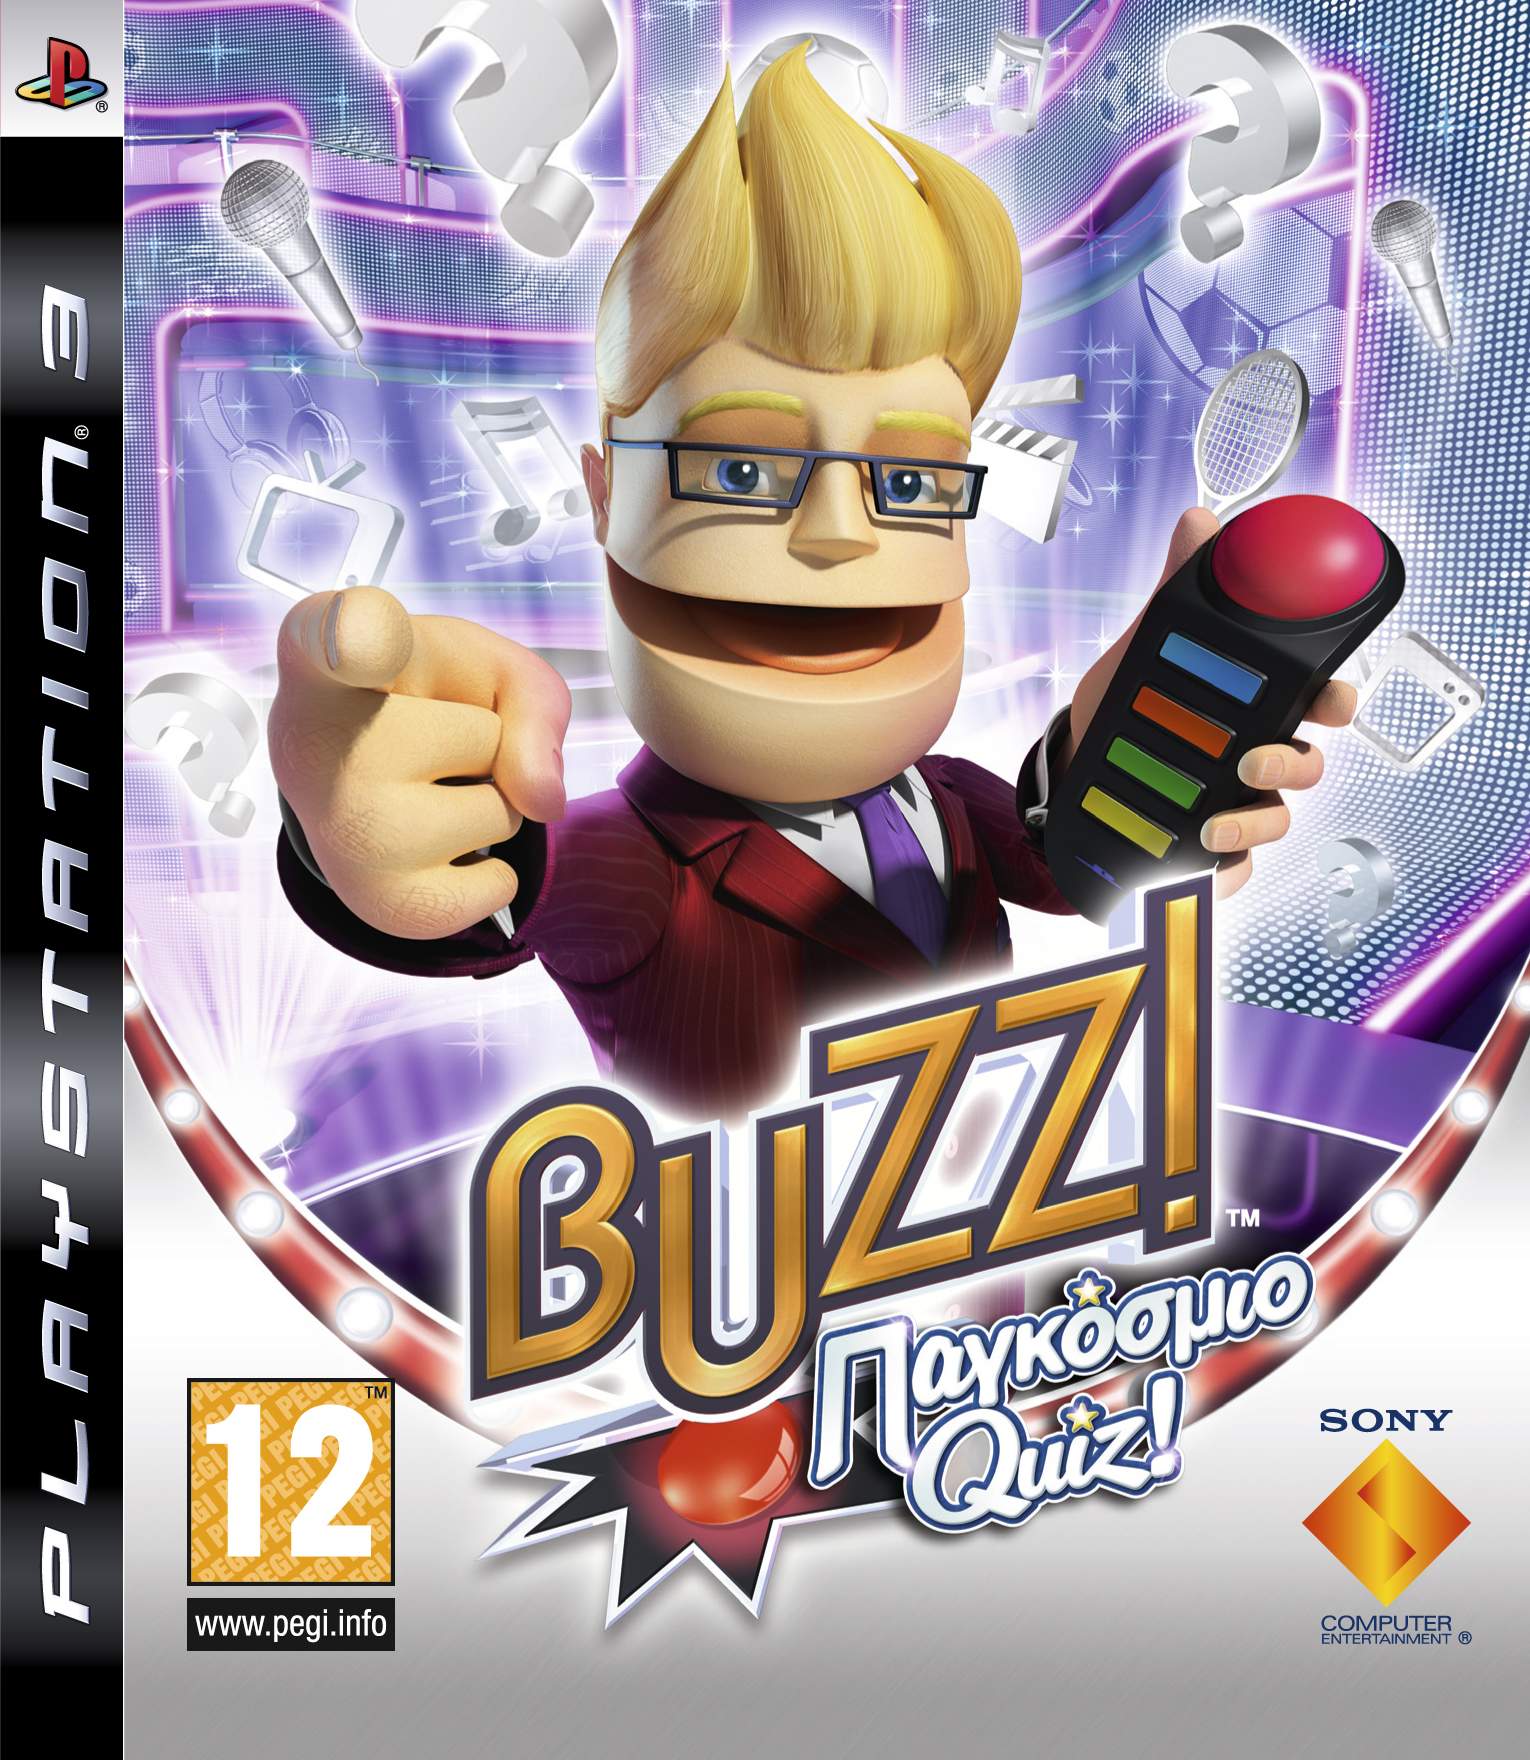 Παιχνίδι Γνώσεων στο PS3 και στο PSP με τον Buzz